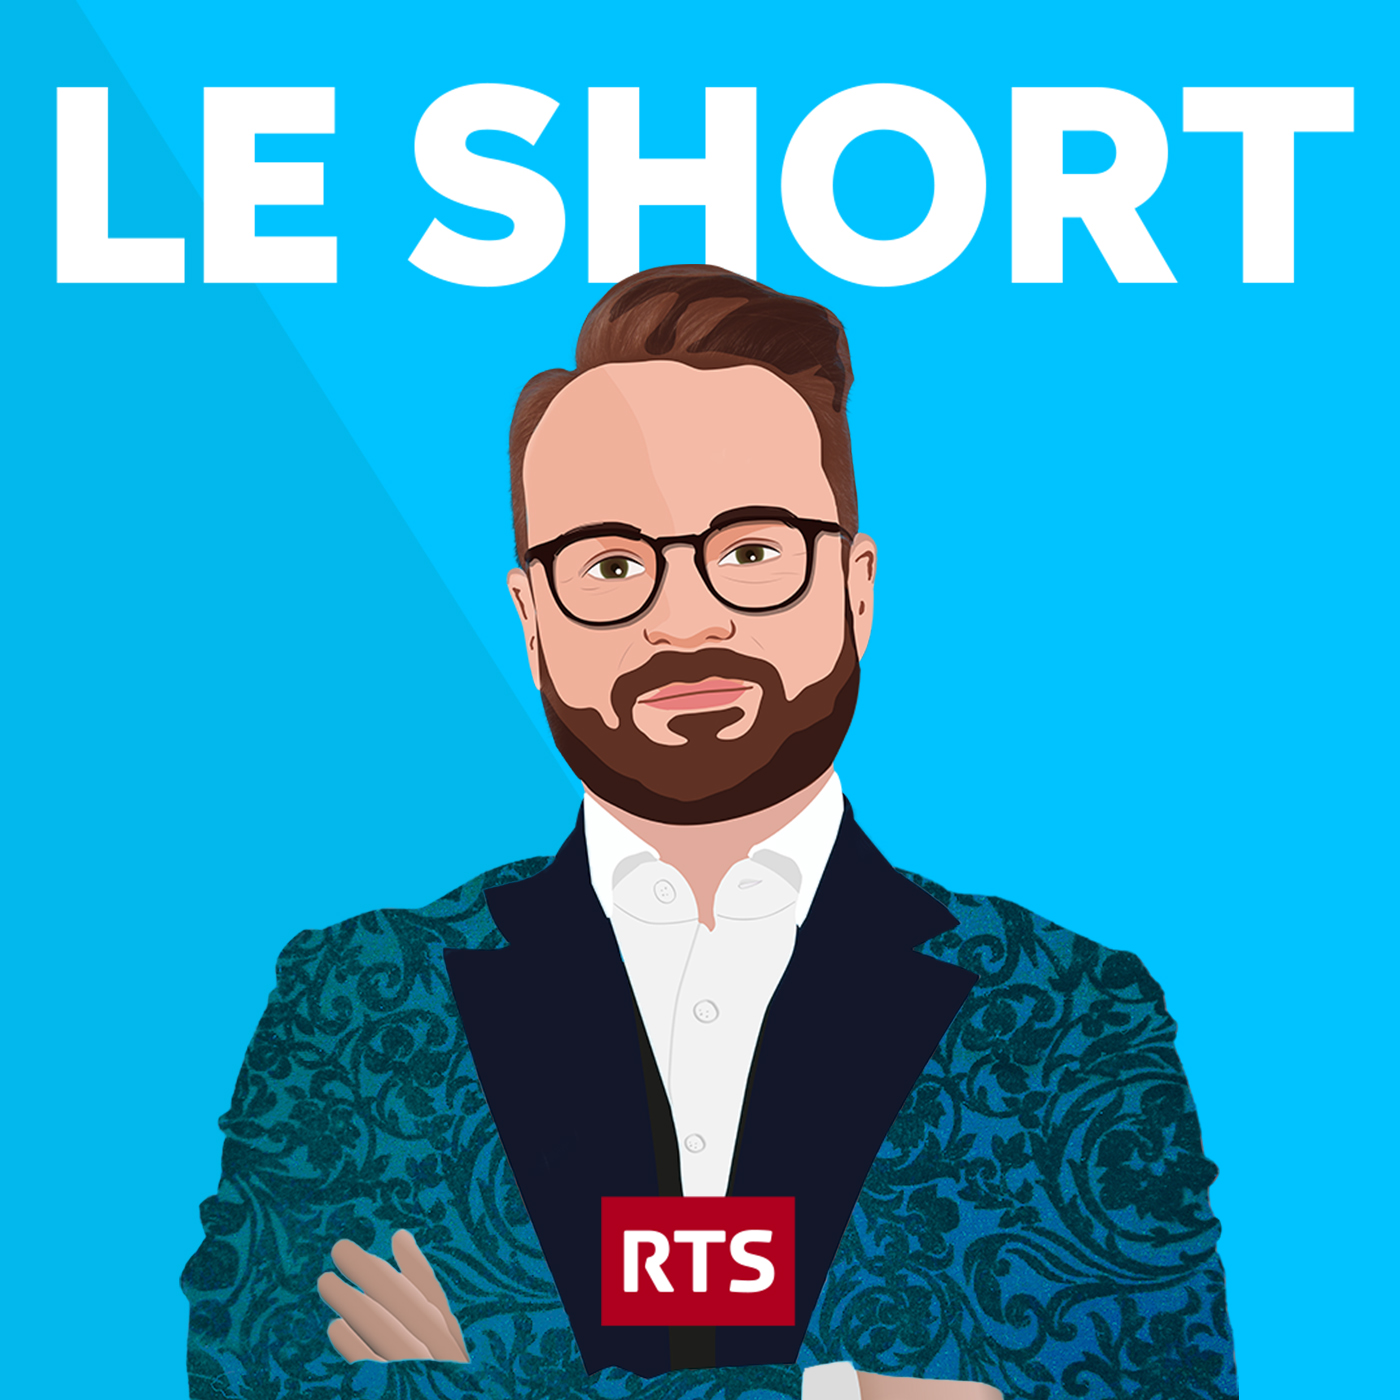 Le Short – RTS